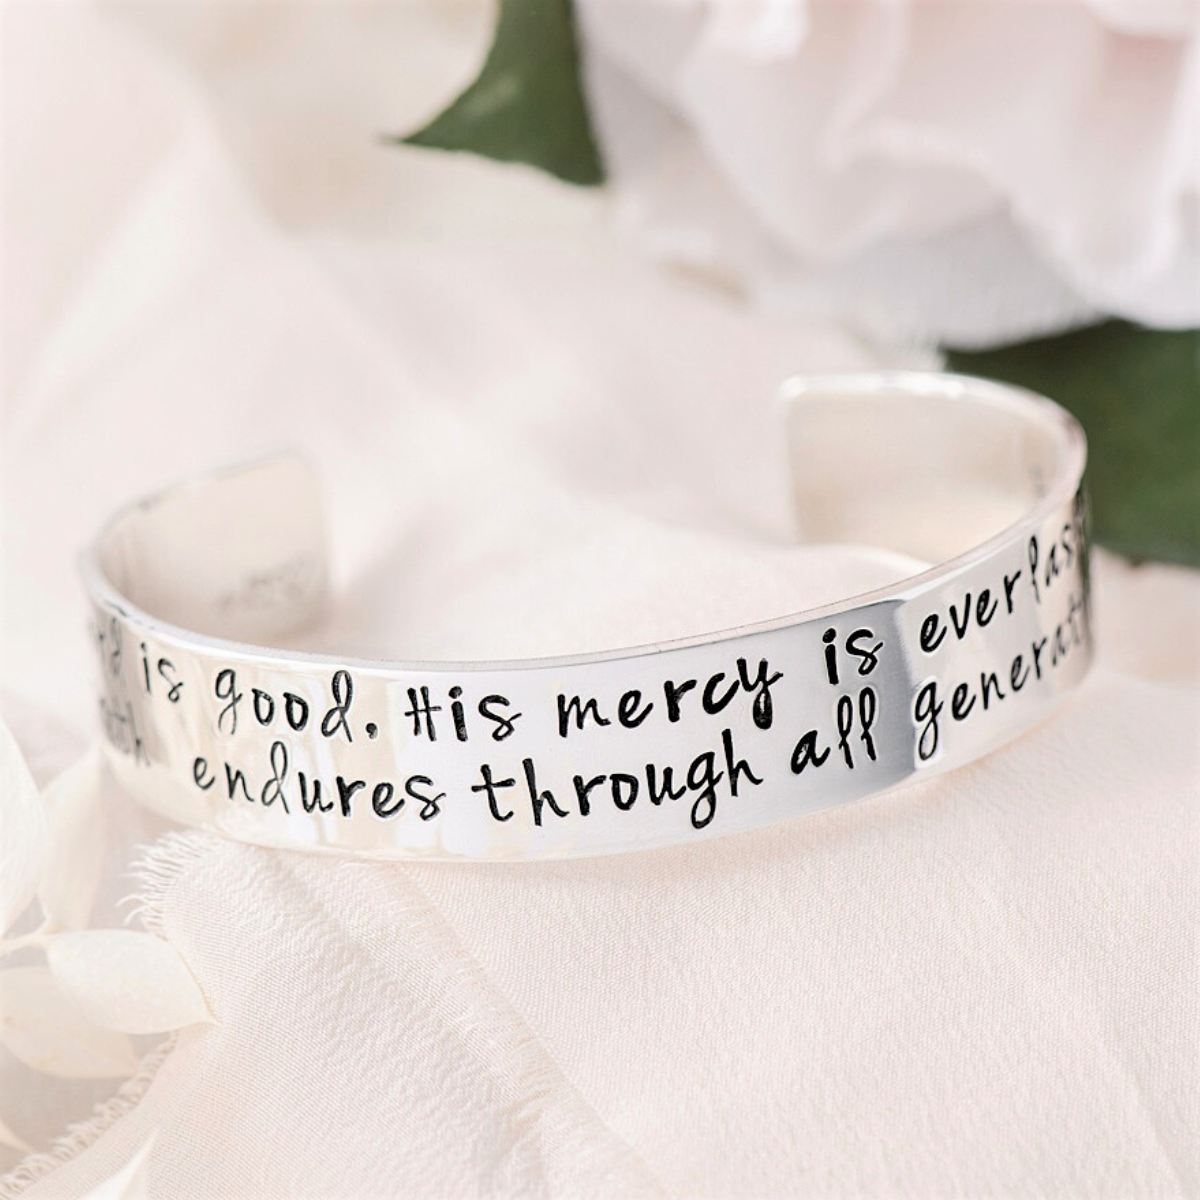 Keep Fucking Going hidden message bracelet - Words as Gifts